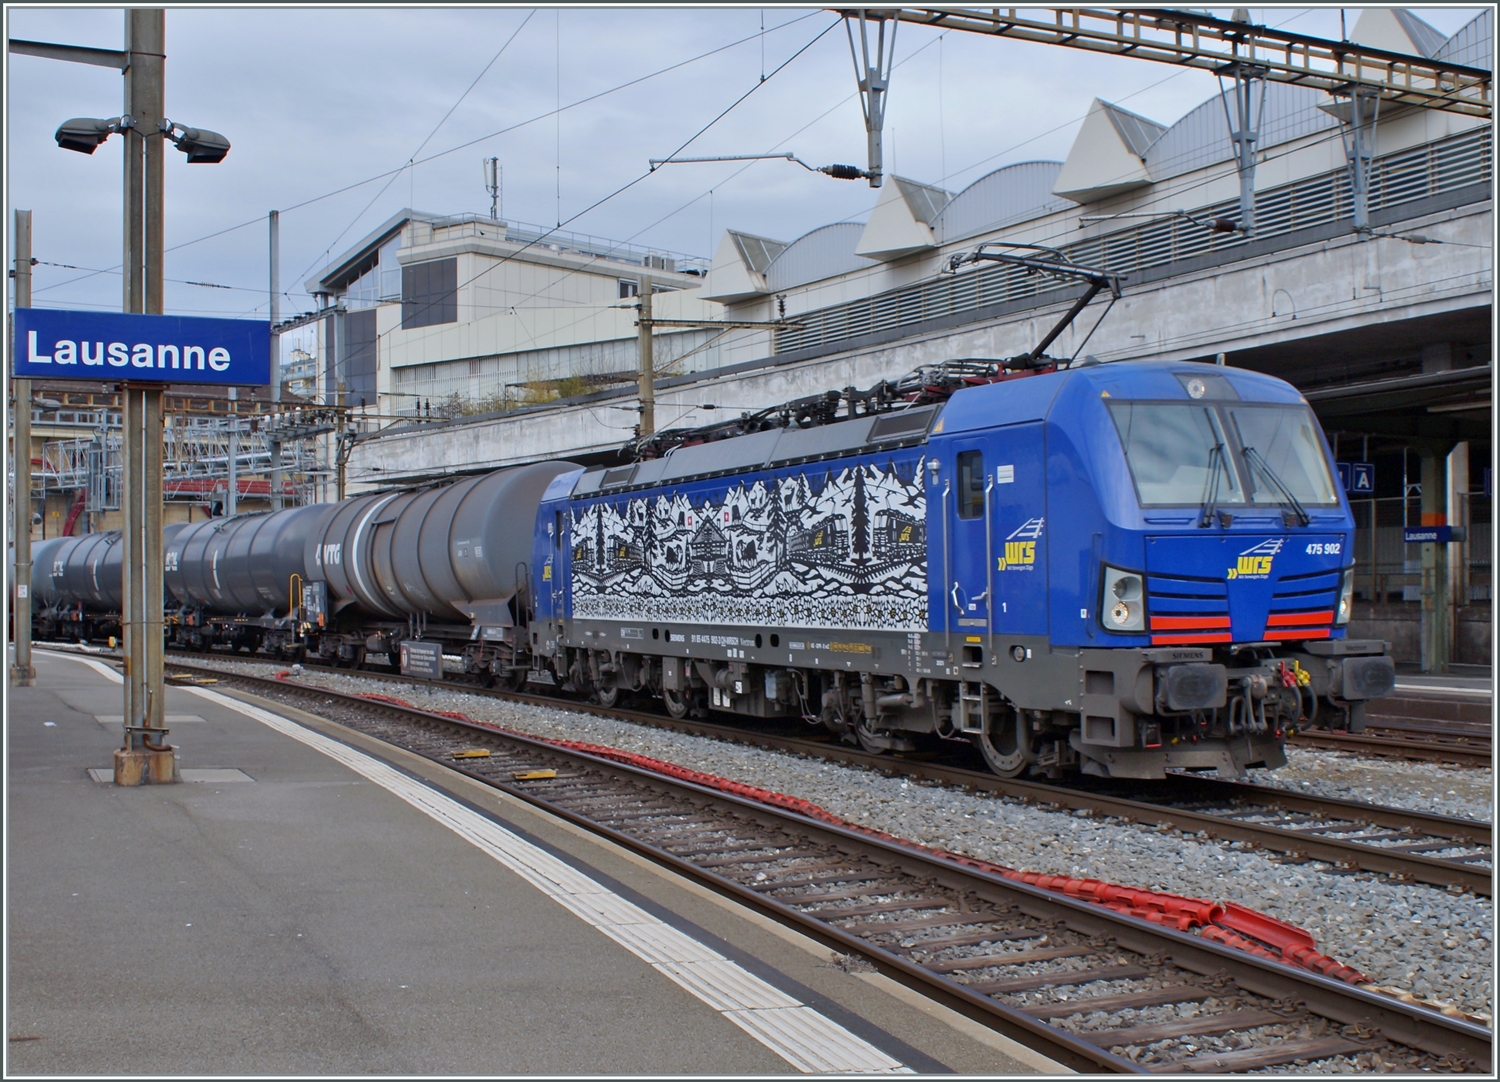 Die WRS Ae 475 902 wartet in Lausanne auf die Weiterfahrt in Richtung Wallis. 

17. Feb. 2023